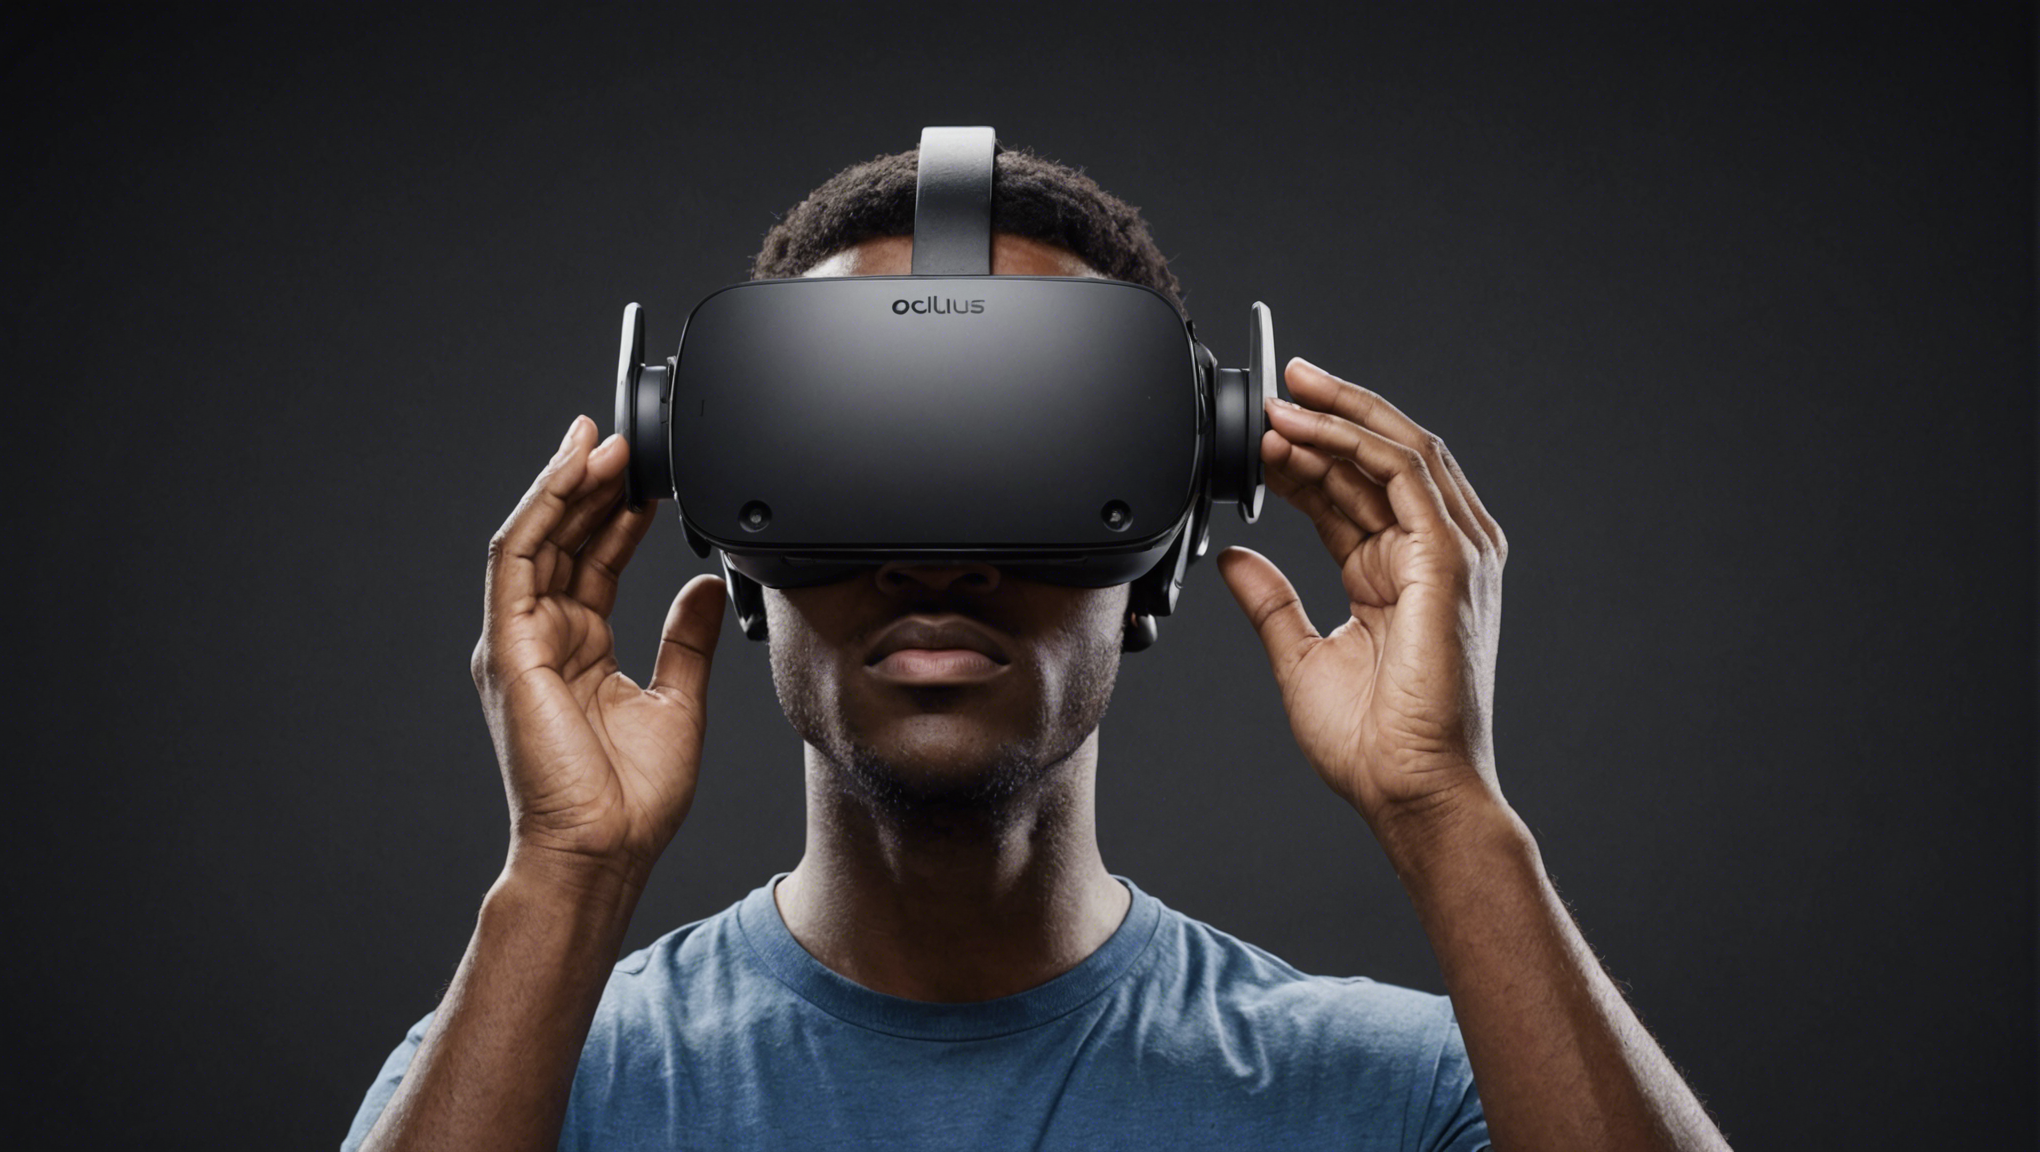 découvrez tout sur l'oculus rift : sa définition, ses fonctionnalités et son utilisation dans le monde de la réalité virtuelle.